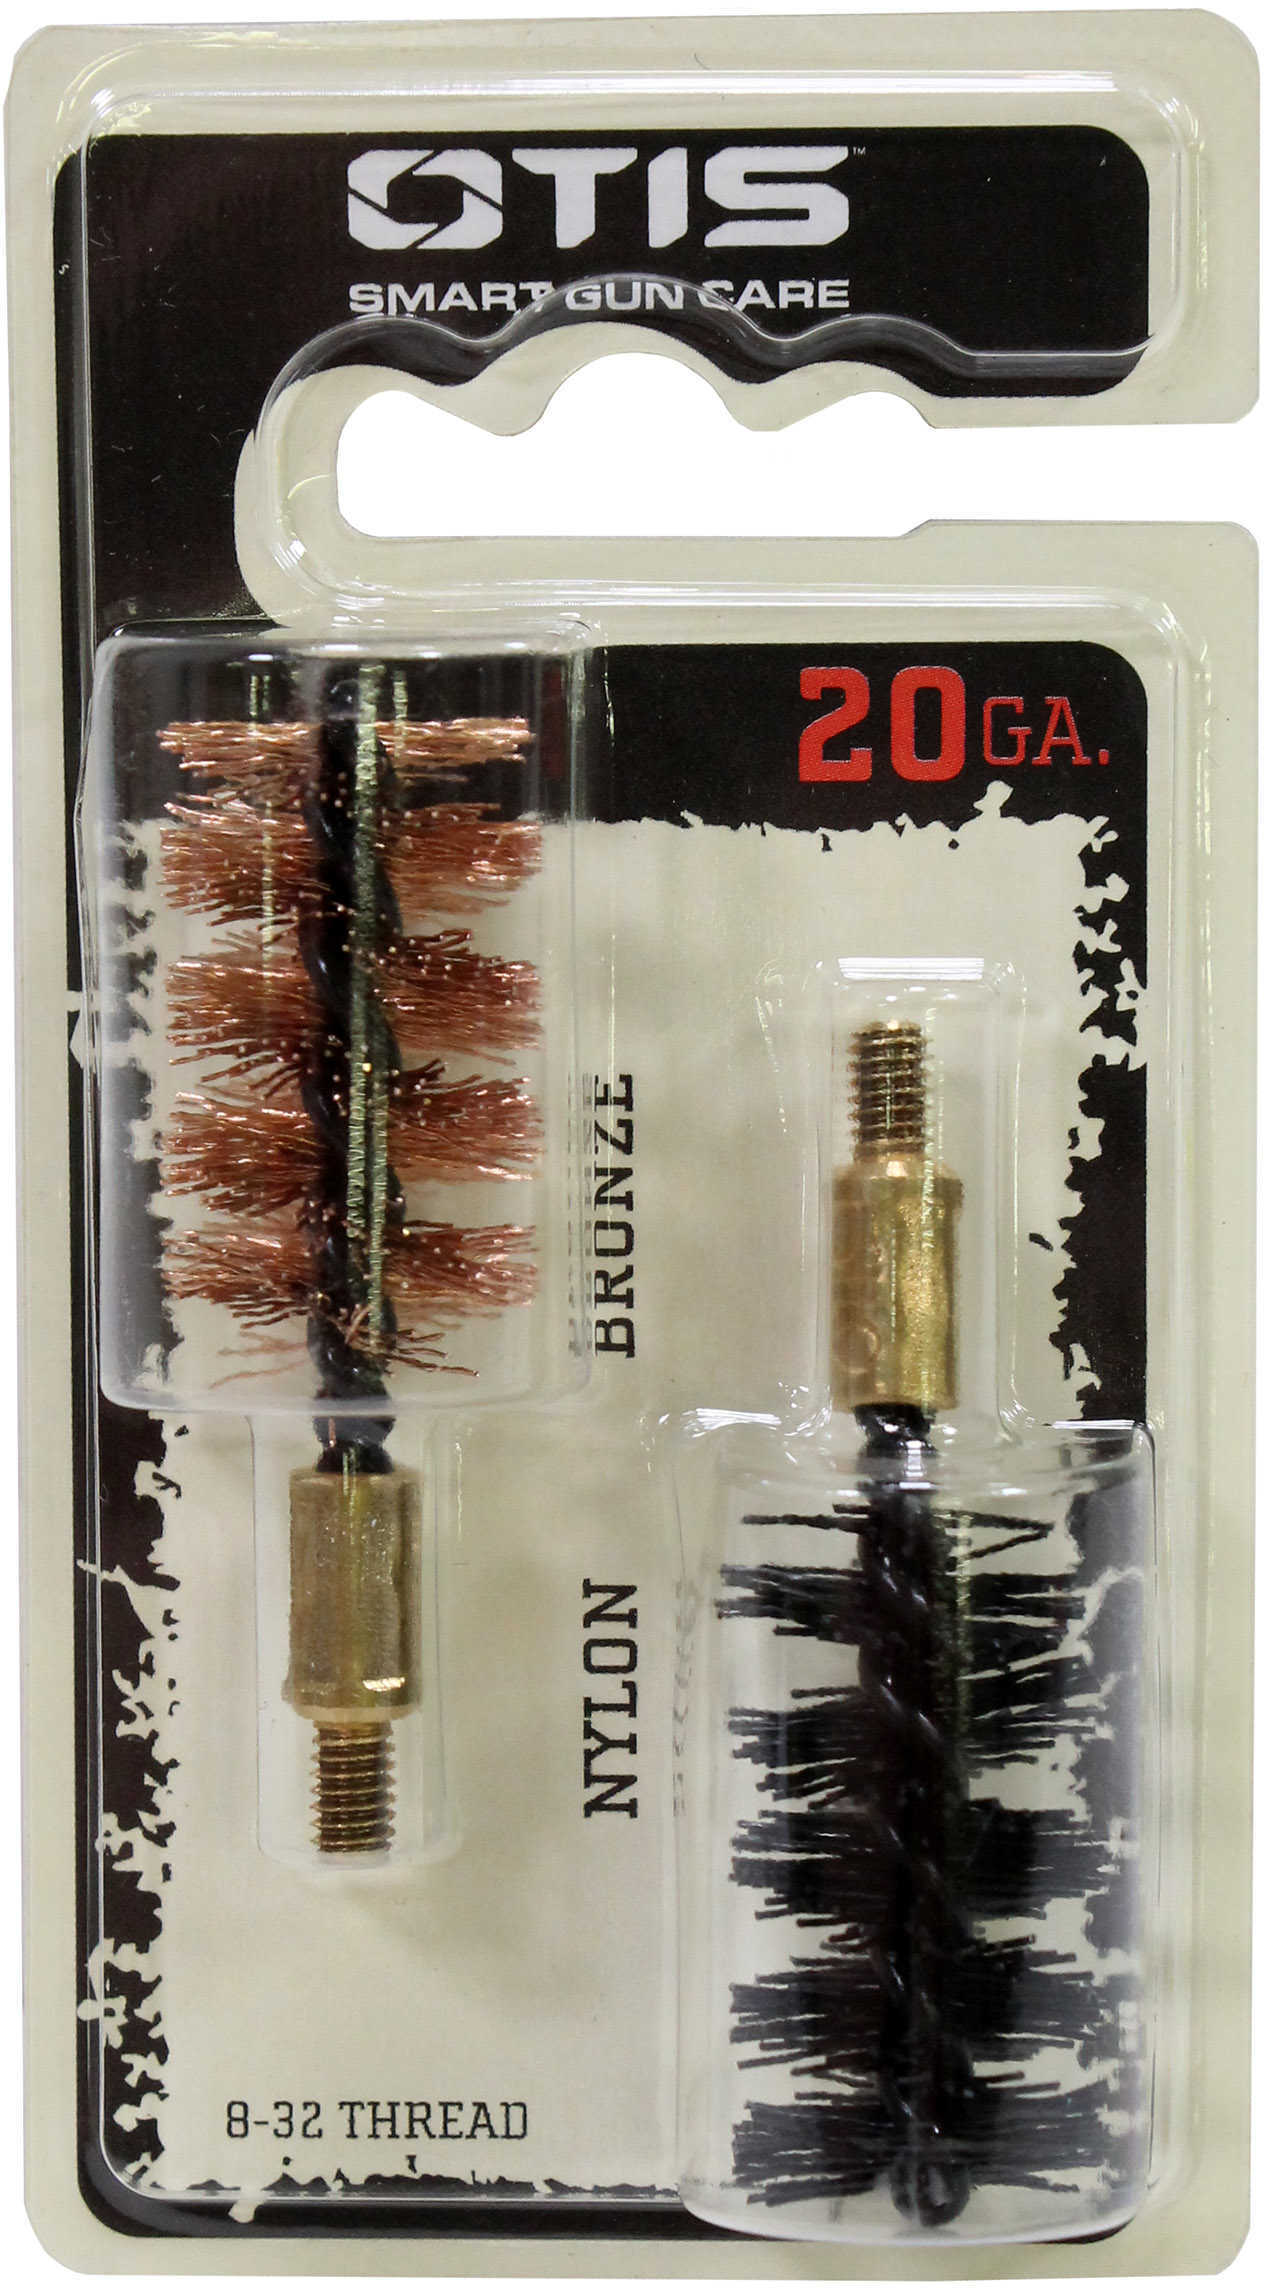 Otis Technologies Bore Brush .20 Gauge 2-Pack 1-Nylon 1-Bronze 8-32MM Thread